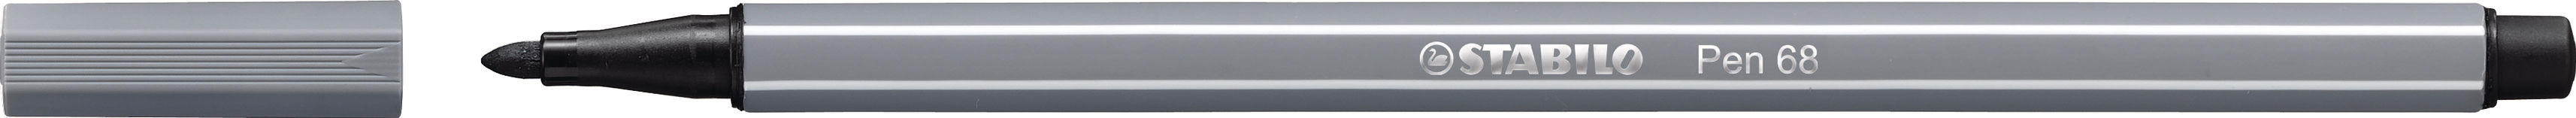 STABILO Stylo Fibre Pen 68 1mm 68/96 gris foncé